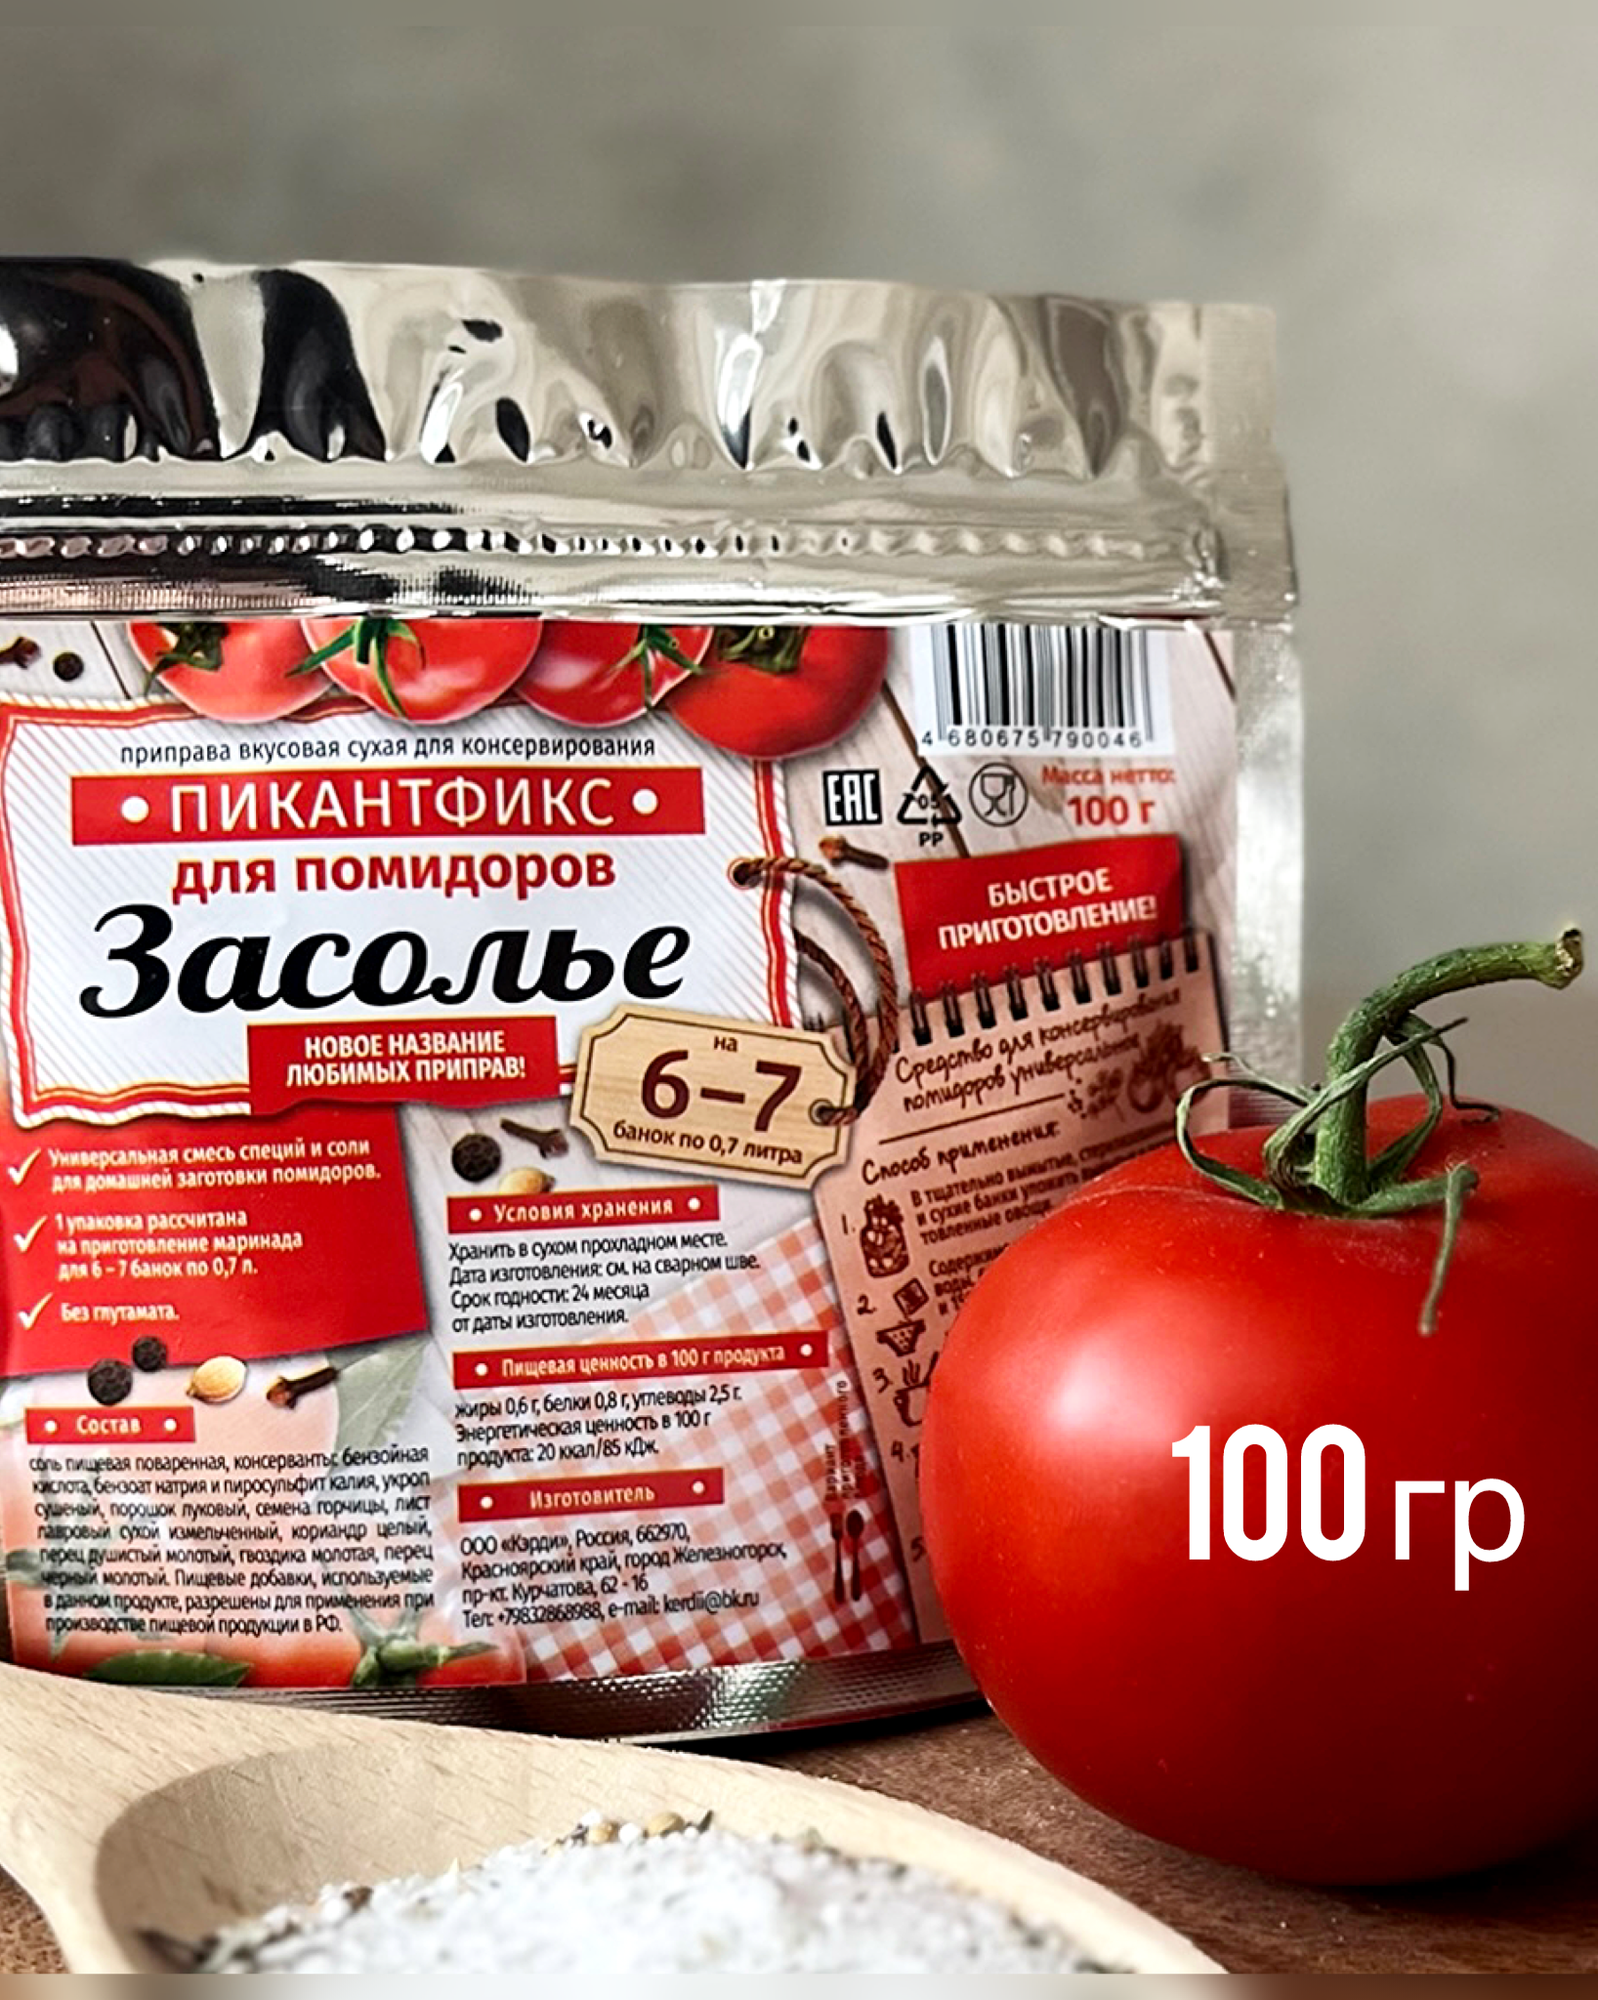 Приправа для маринования помидоров 100 гр Пикантфикс /Засолье